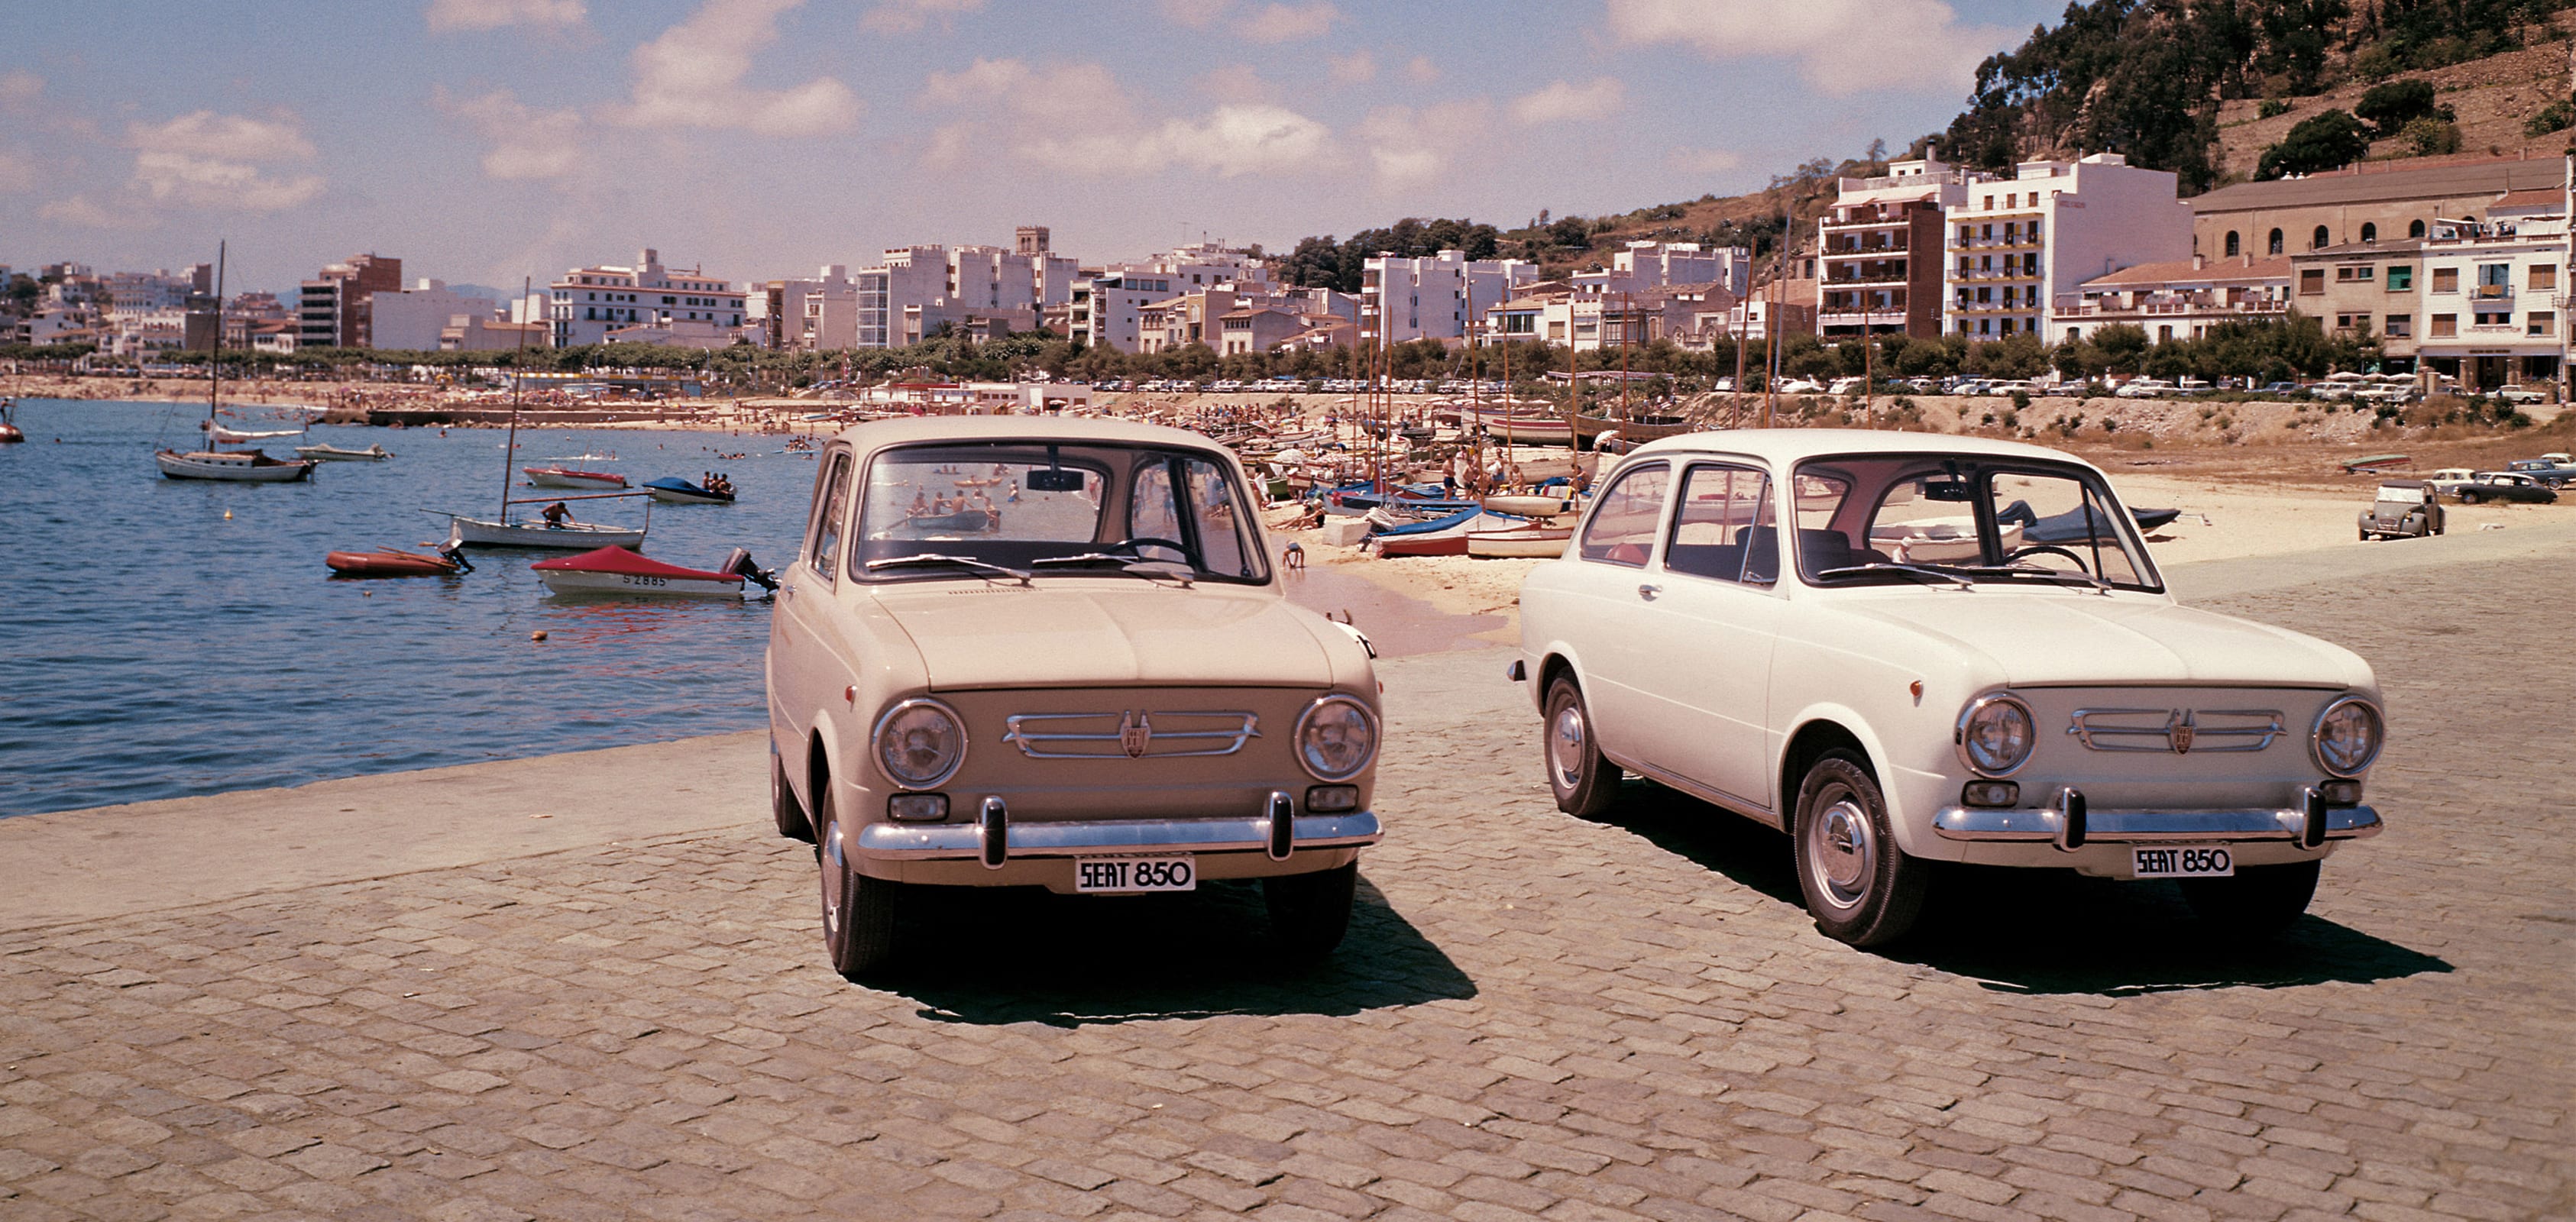 L'histoire de la marque SEAT Exportations des années 1960 - SEAT 850 voitures sur une image de tête de plage